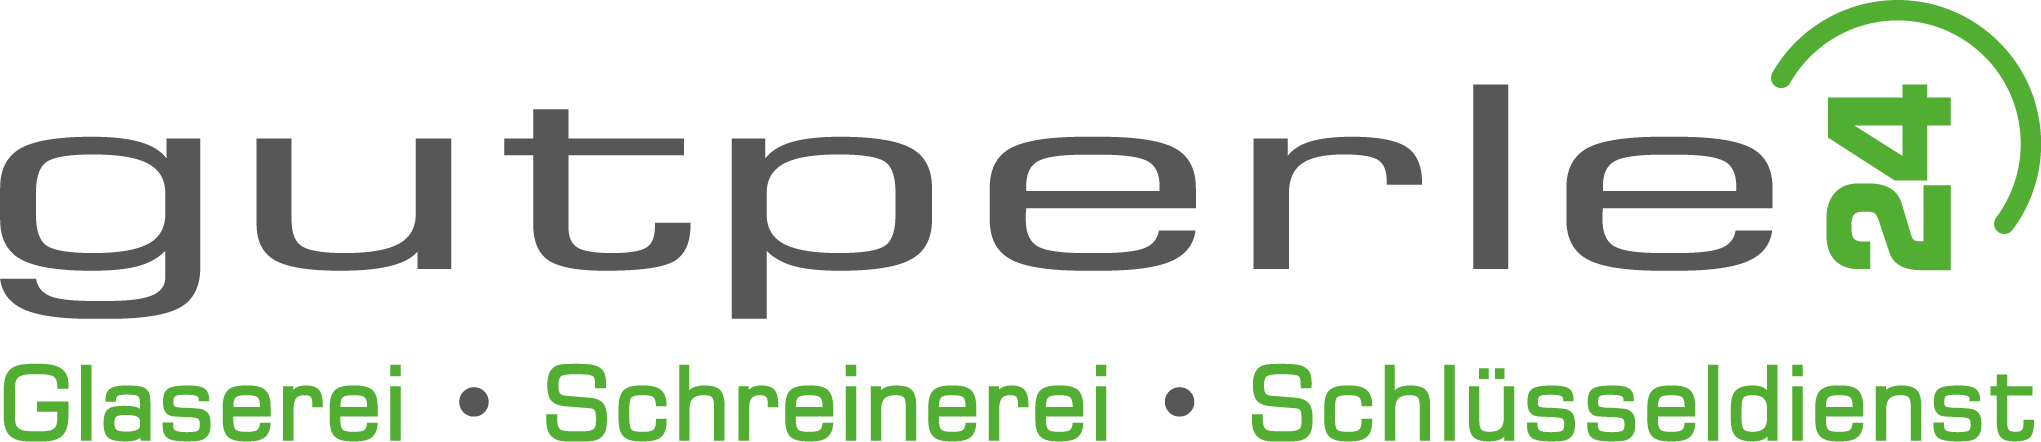 Gutperle24 Logo 2020